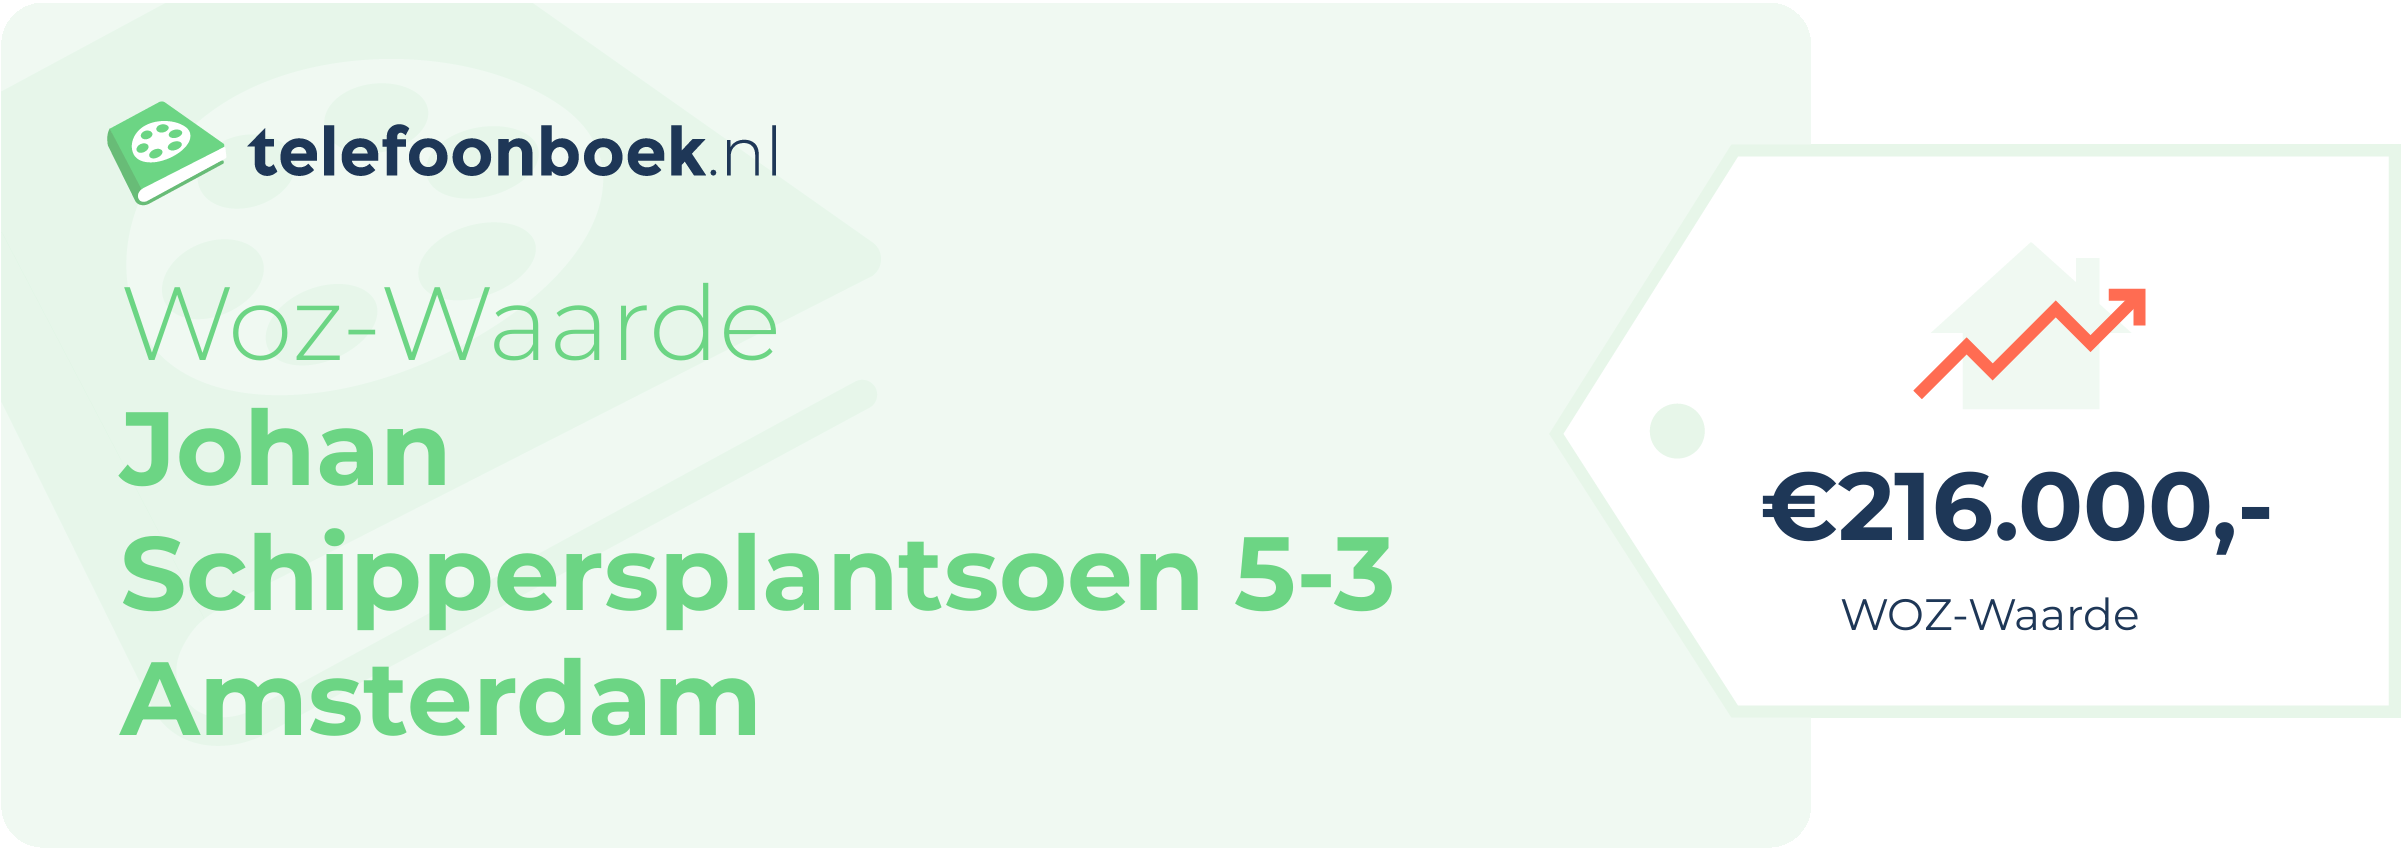 WOZ-waarde Johan Schippersplantsoen 5-3 Amsterdam